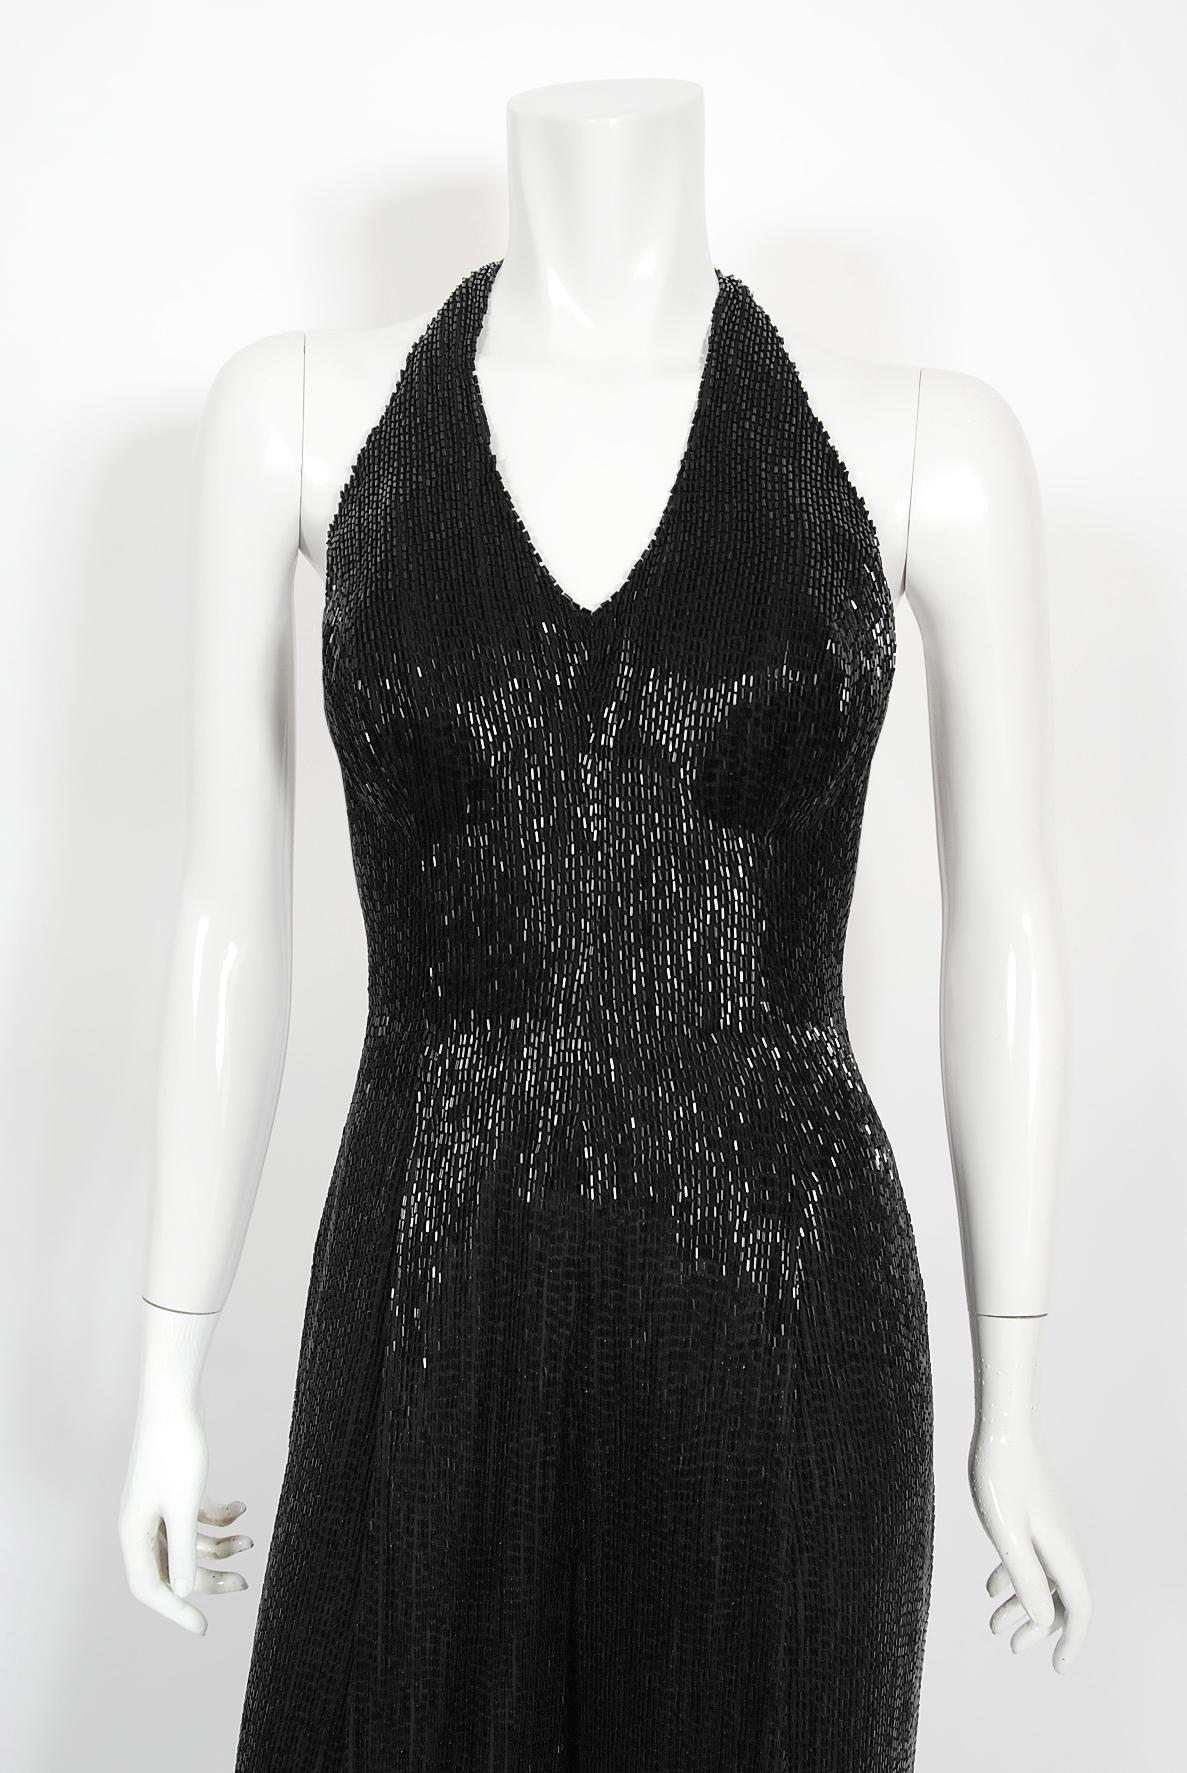 Une combinaison de couture noire entièrement perlée, ultra chic et incroyablement intemporelle, datant de la fin des années 1970. Ce spectacle captivant a été conçu par les célèbres 